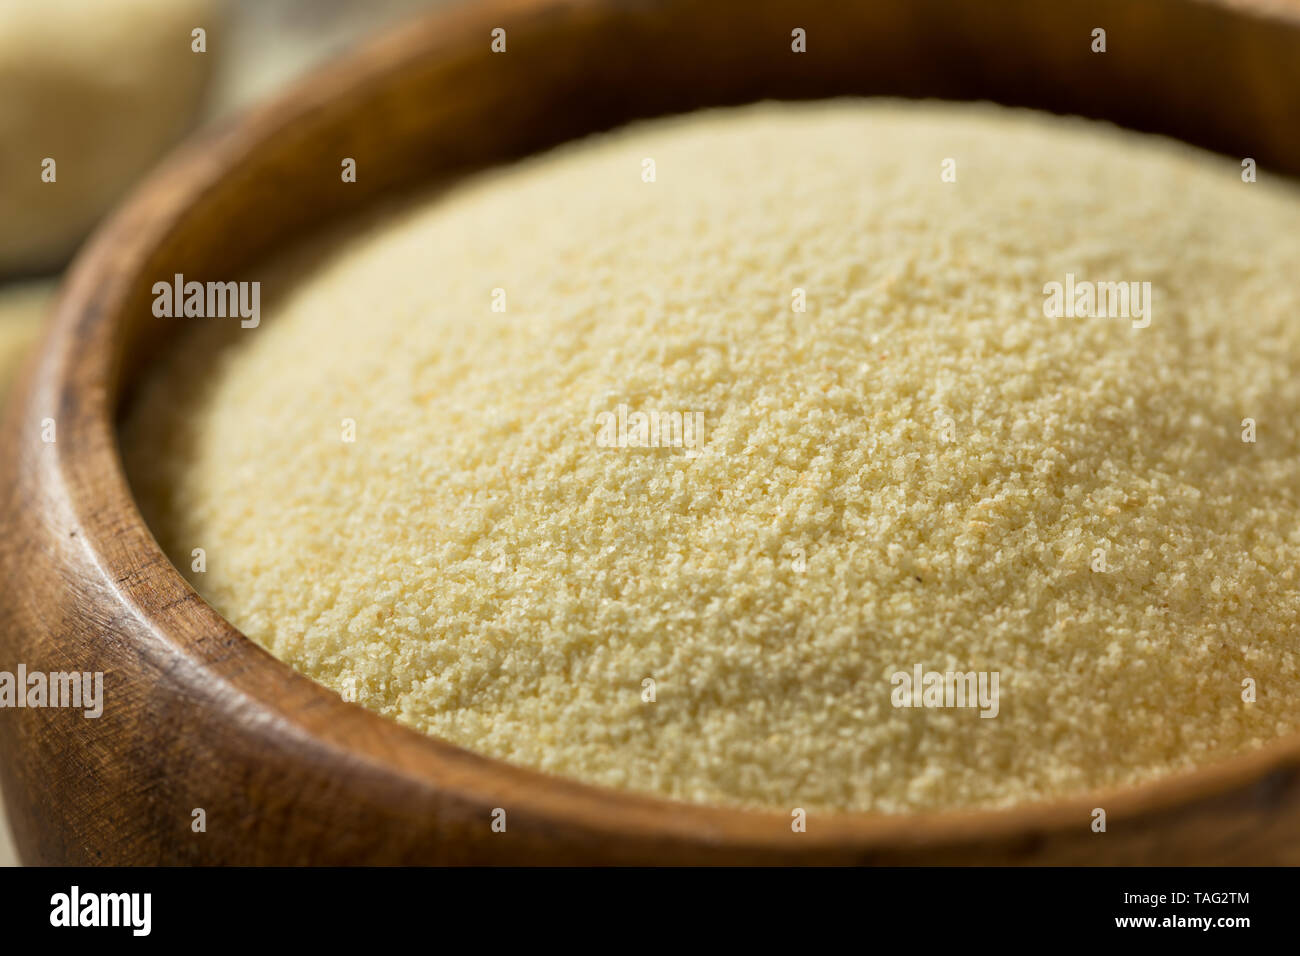 La semoule de blé dur bio à sec la farine dans un bol Banque D'Images